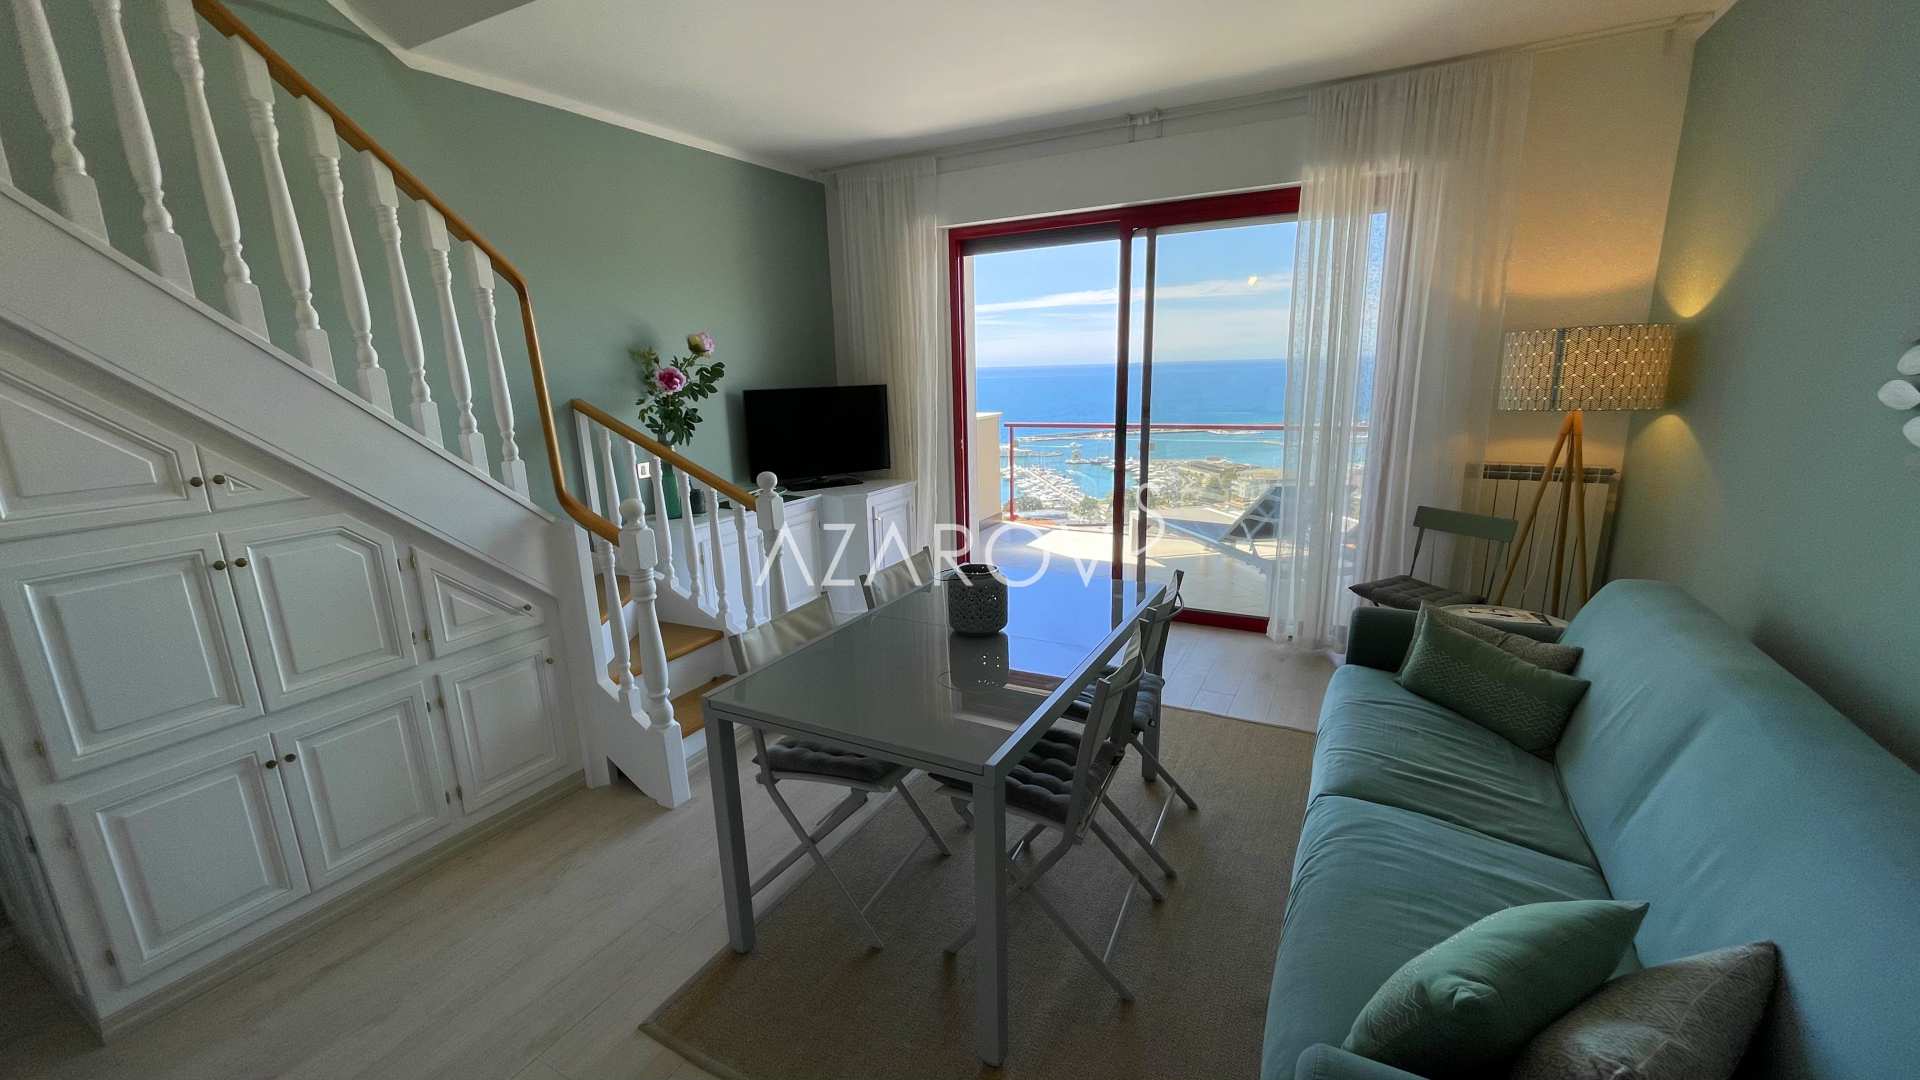 Appartamento bicamere a Sanremo sul mare